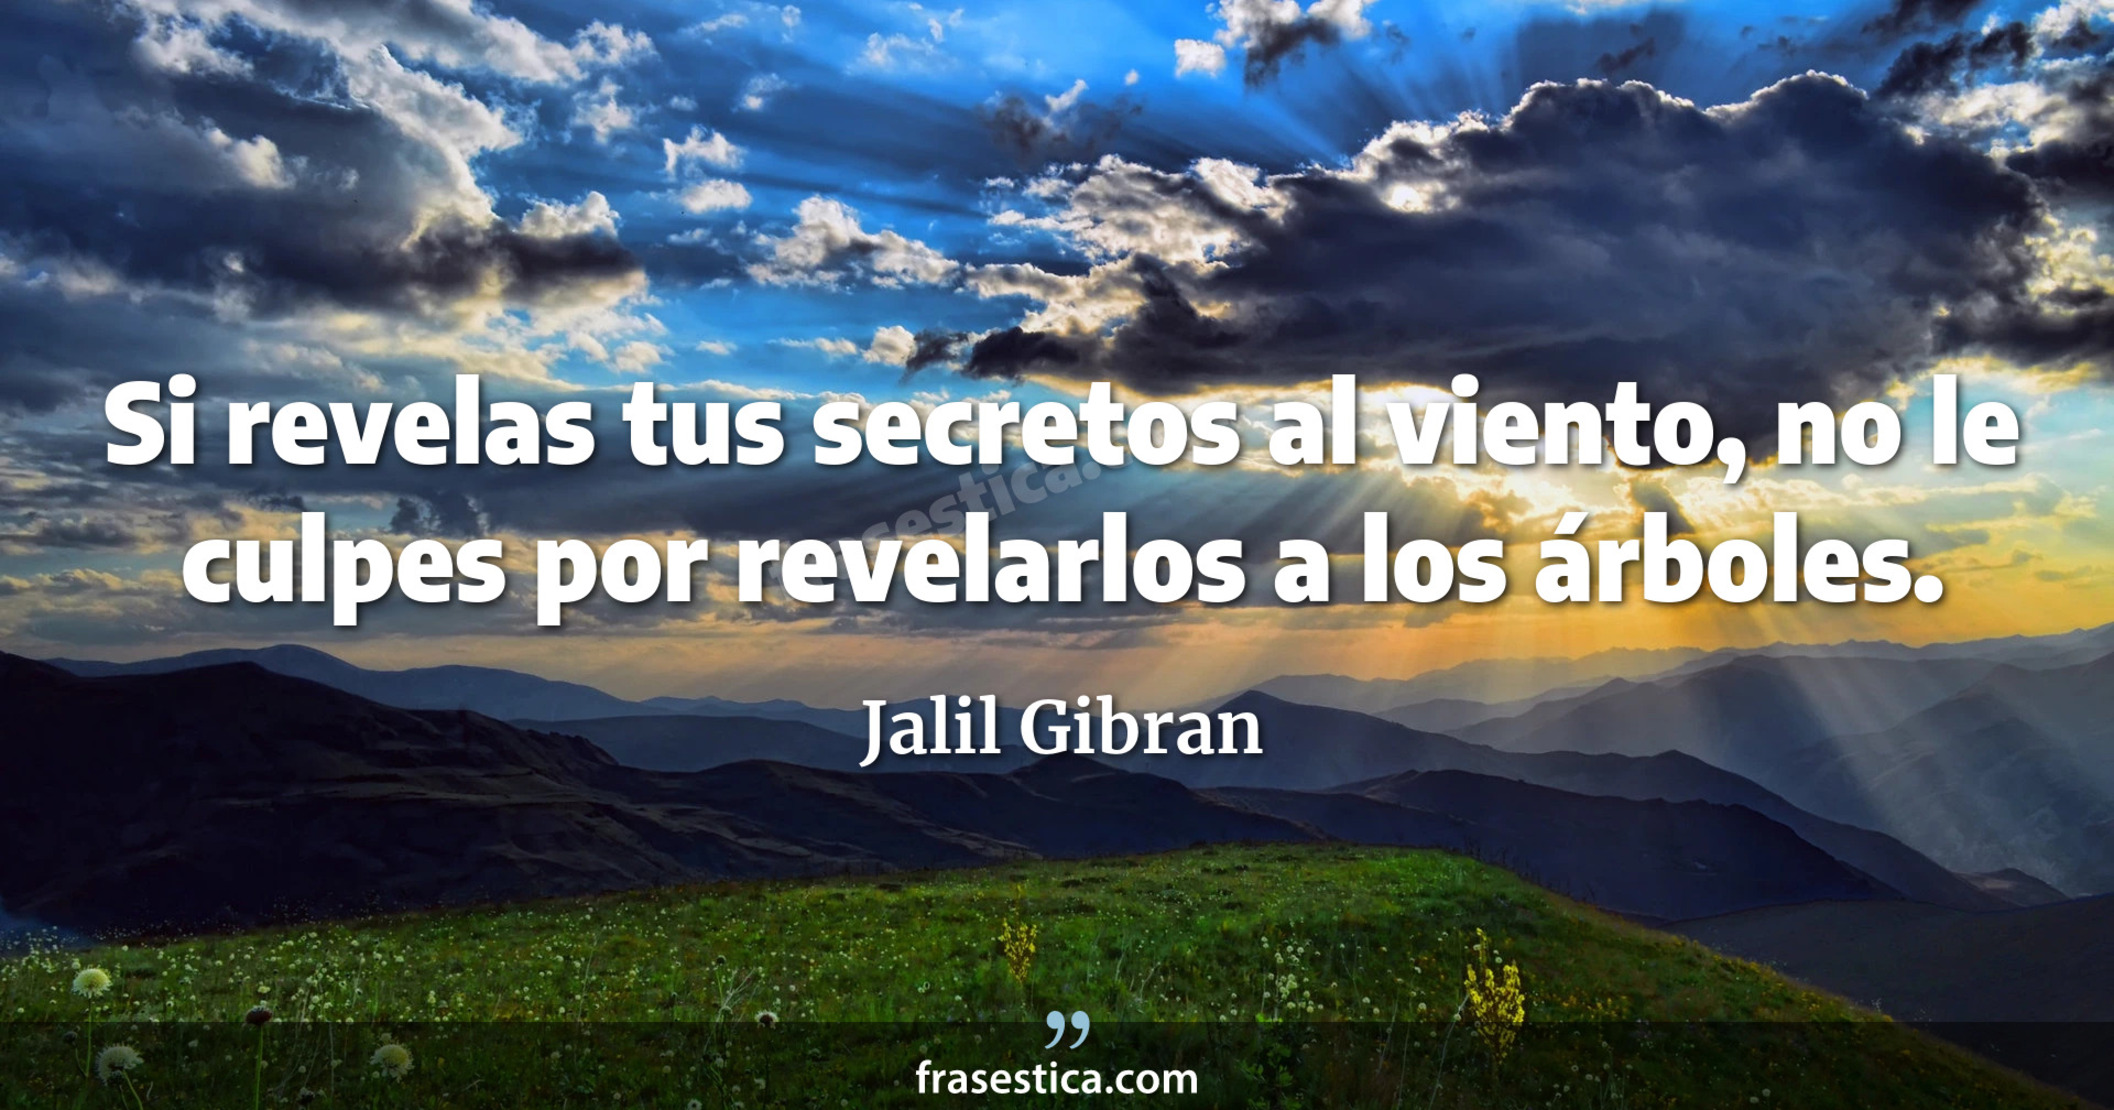 Si revelas tus secretos al viento, no le culpes por revelarlos a los árboles. - Jalil Gibran